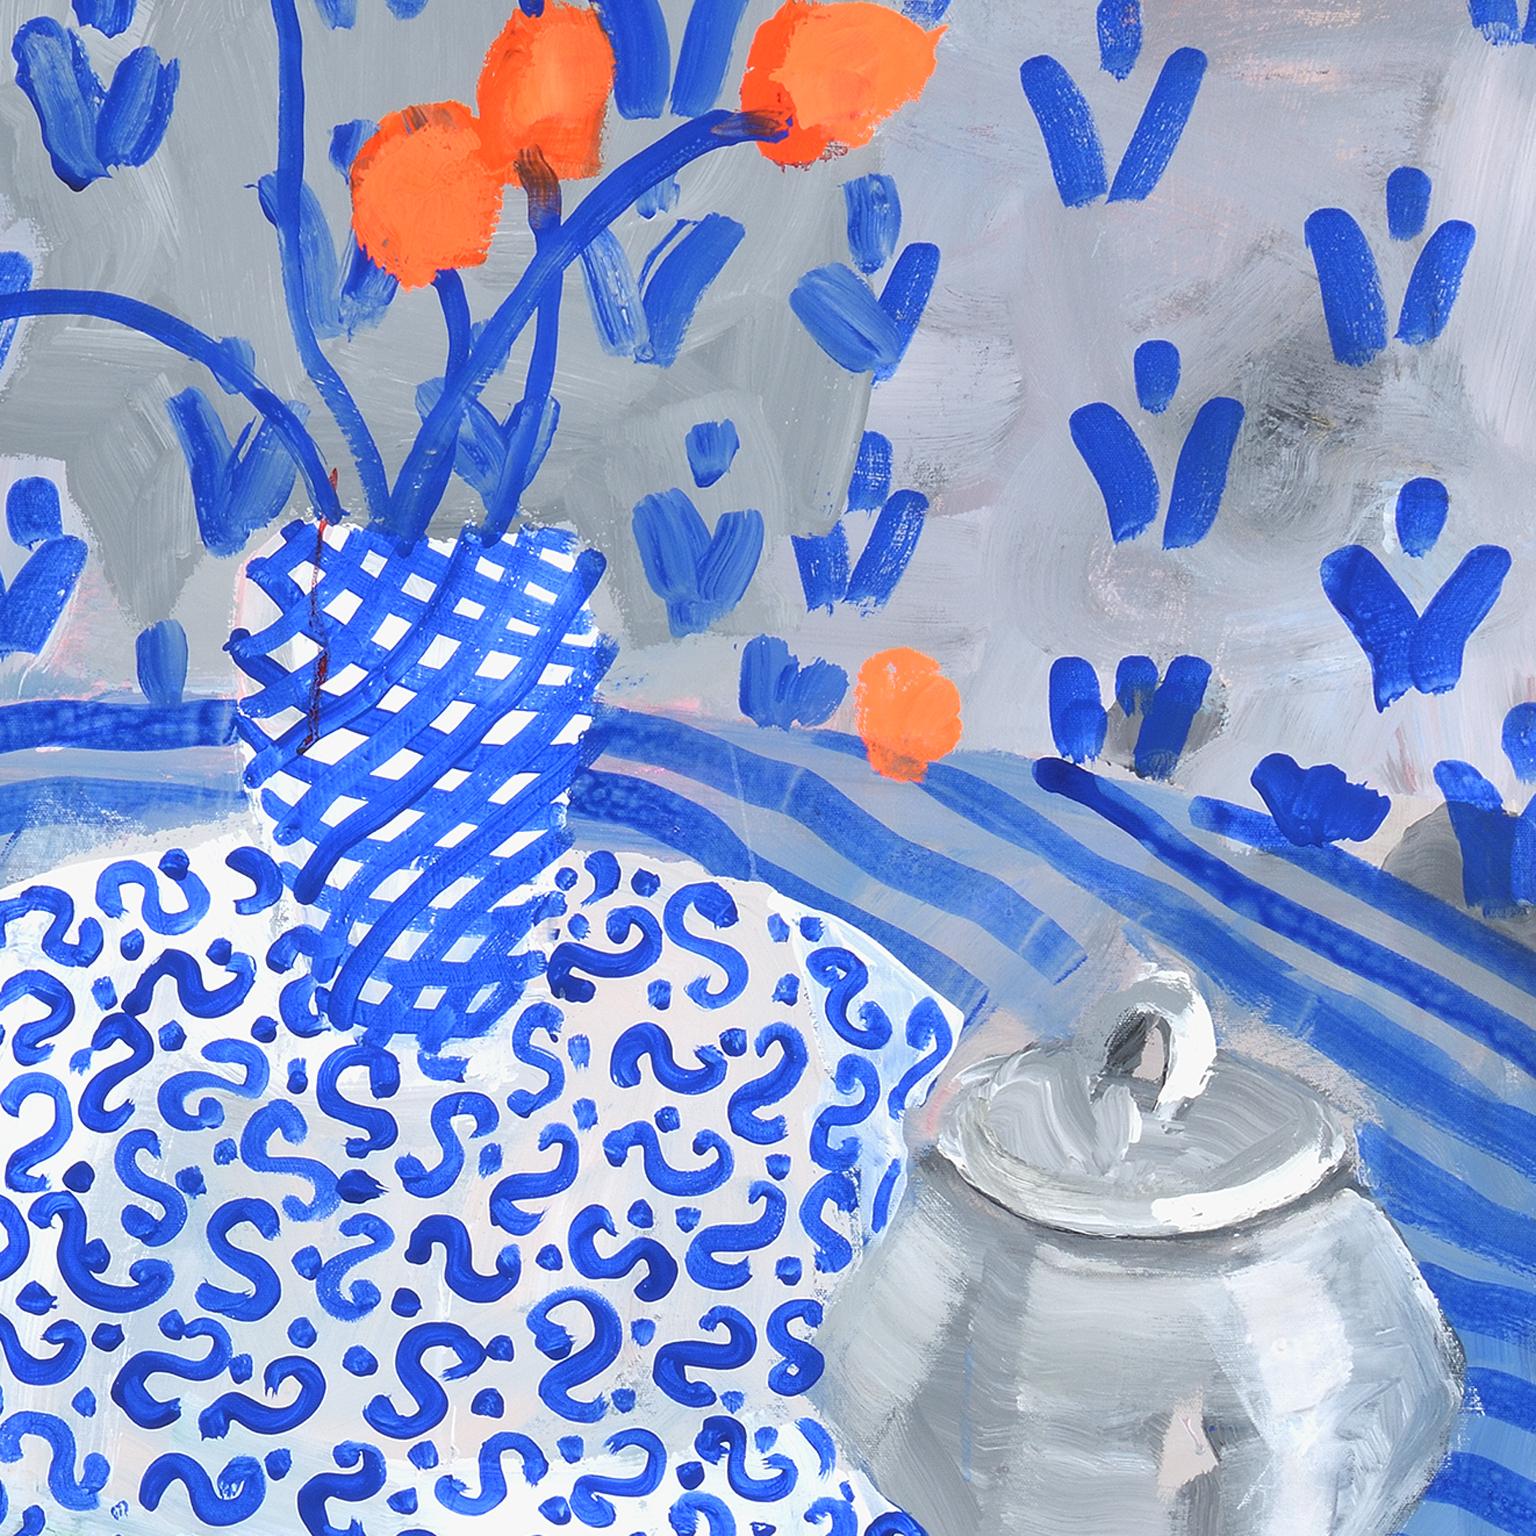 Art Matters - Comme un fait fact, bleu avec orange 48 x 36 - Expressionnisme abstrait Painting par Patricia Zinsmeister Parker